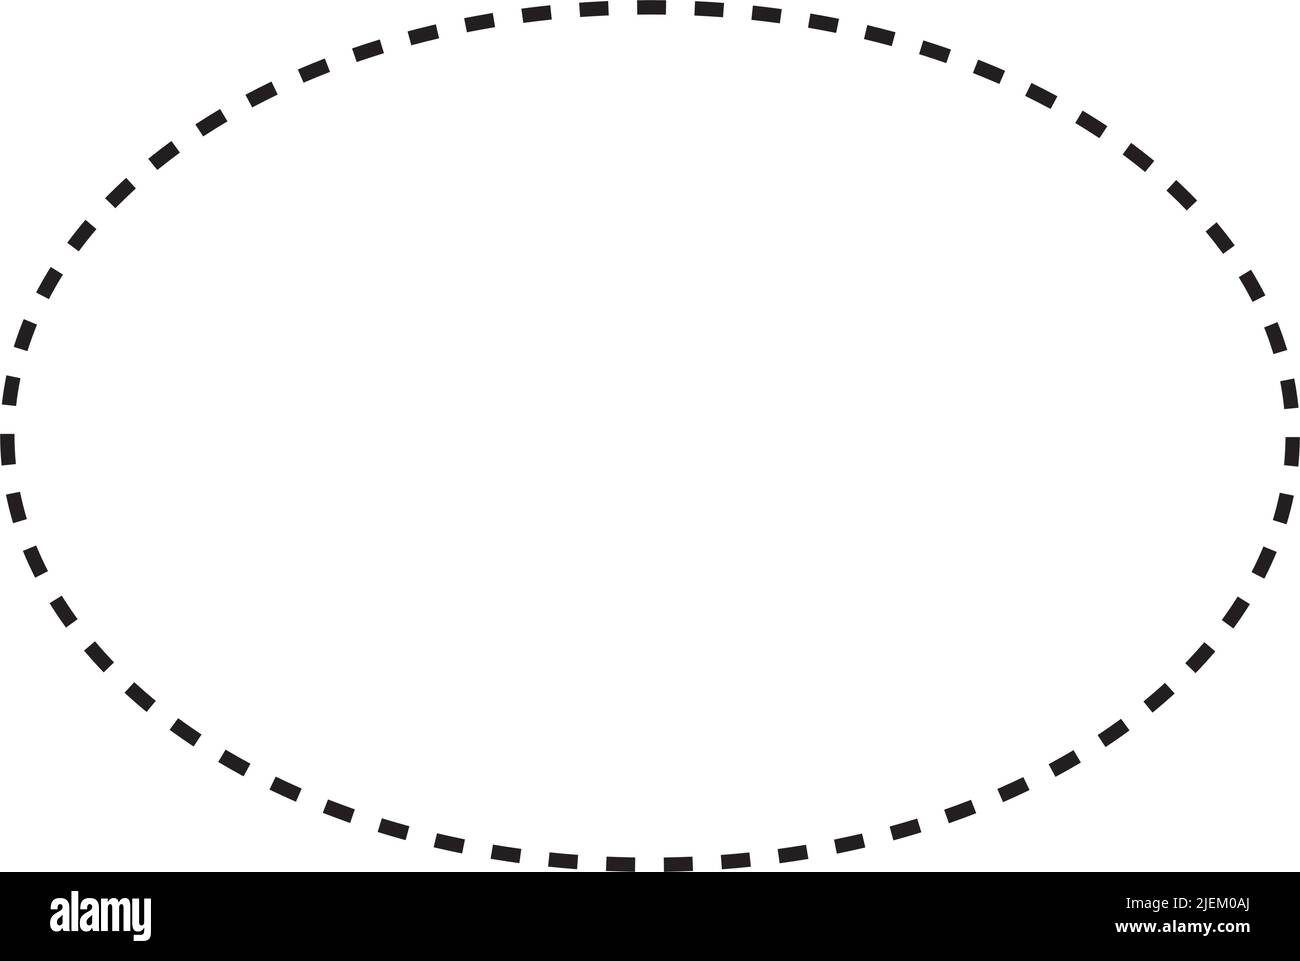 Simbolo ellisse icona vettoriale a forma tratteggiata per l'elemento dell'interfaccia utente di un disegno grafico creativo in un'illustrazione con pittogramma Illustrazione Vettoriale